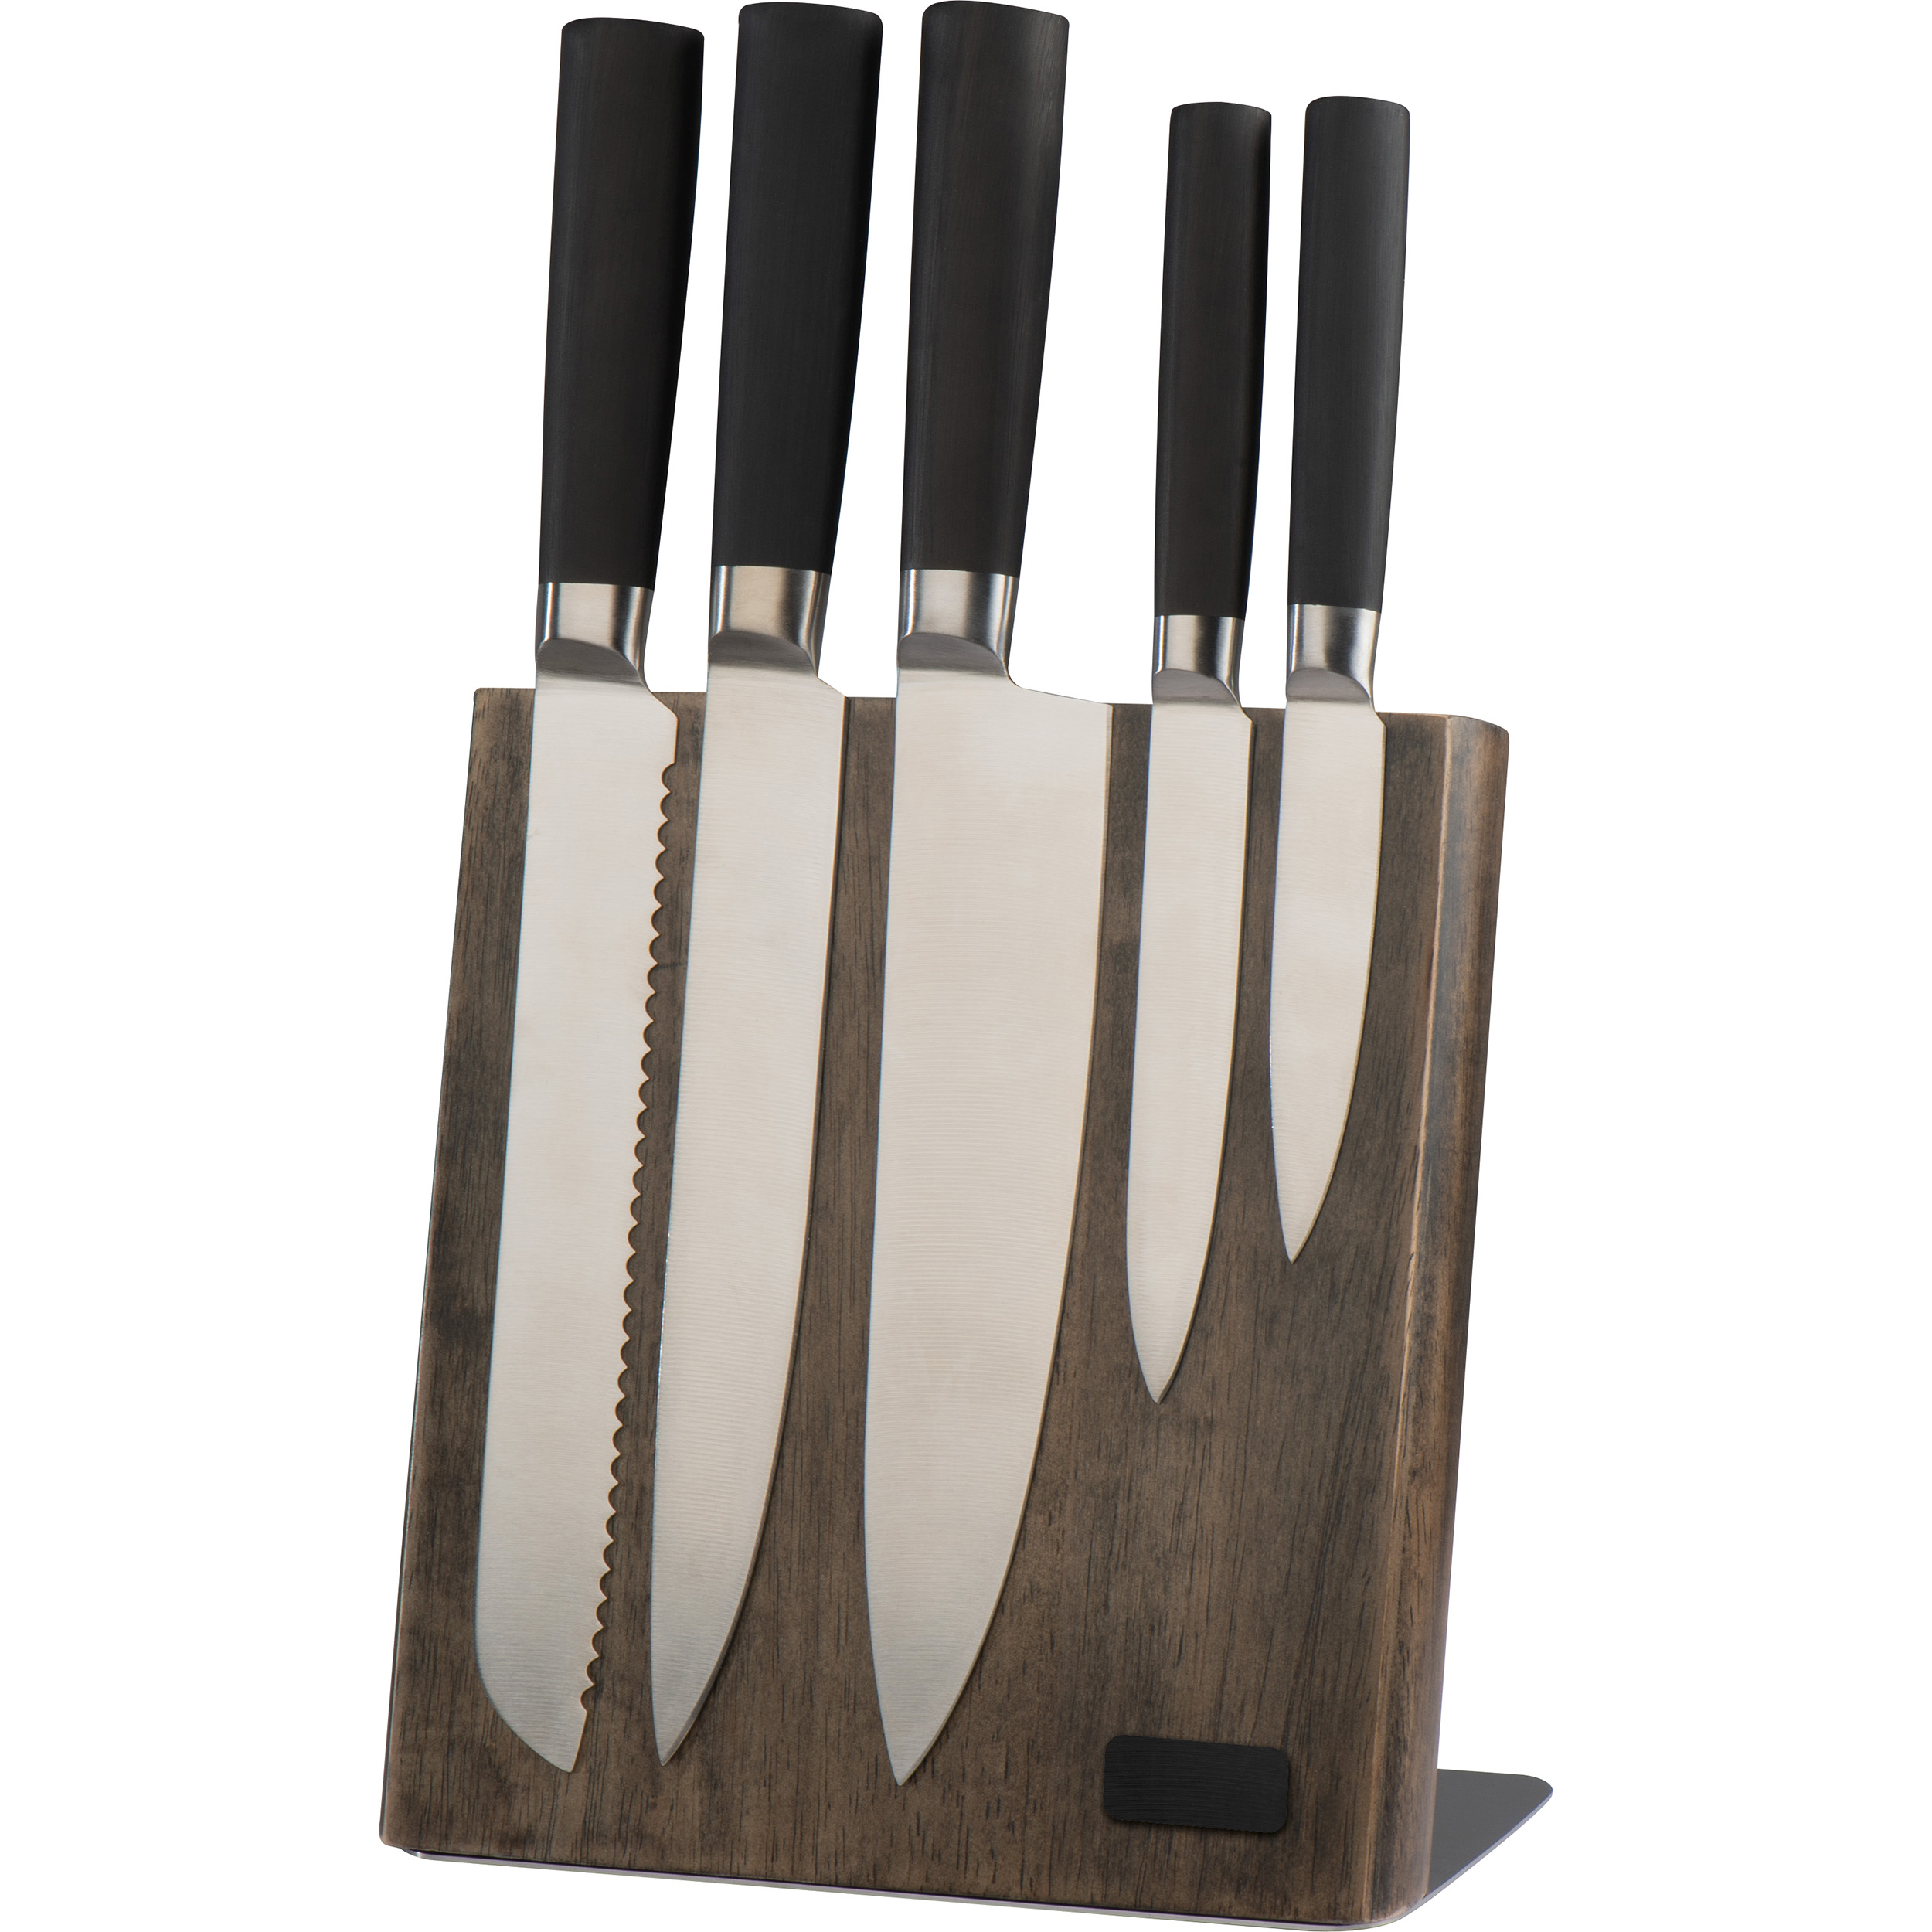 Messerblock aus Holz mit 5 verschiedenen Messern | 8079103